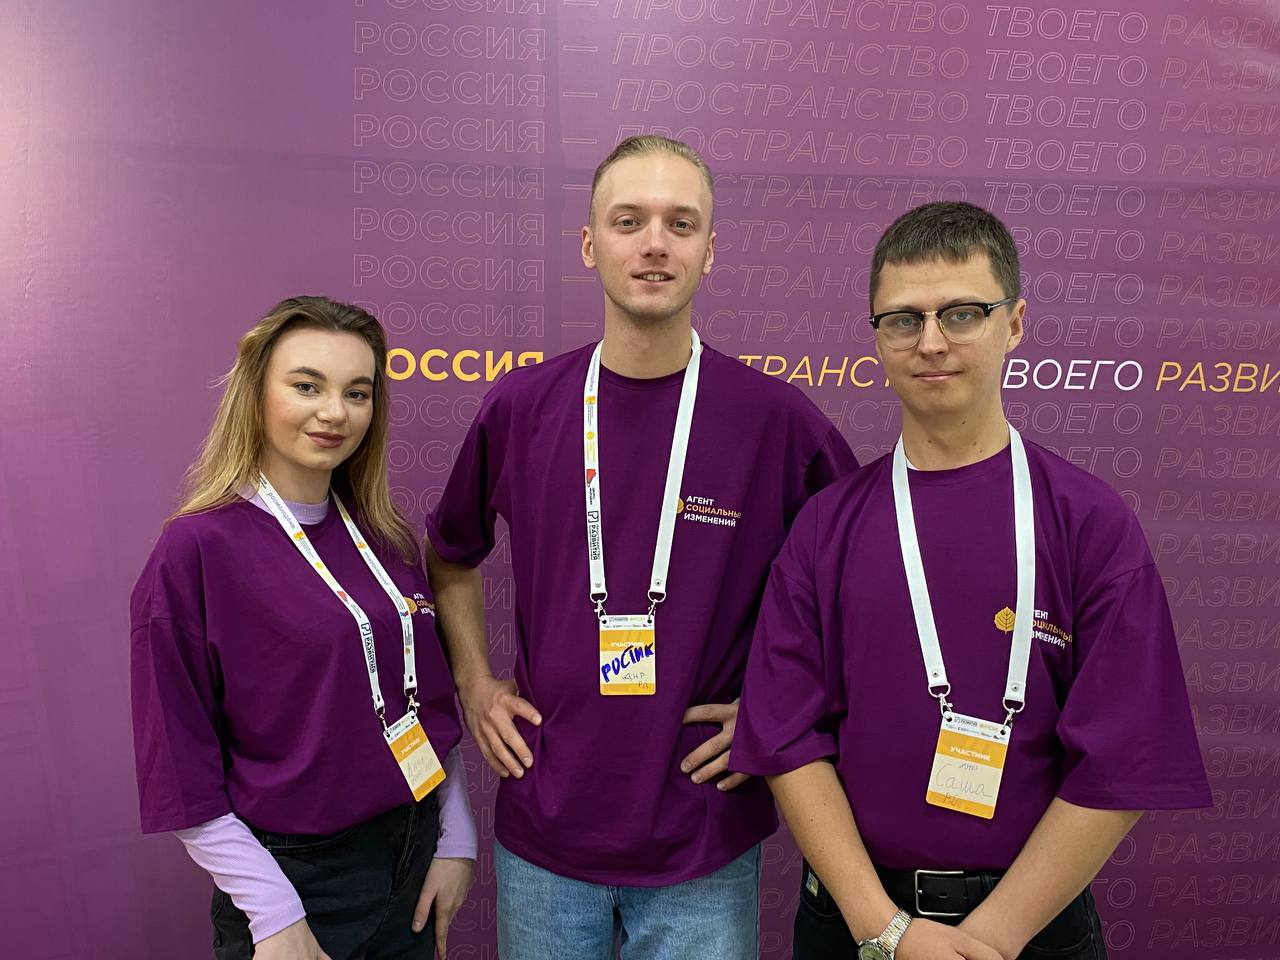 Российский Союз Молодежи подготовит 20 молодежных сообществ  в ЛНР и ДНР